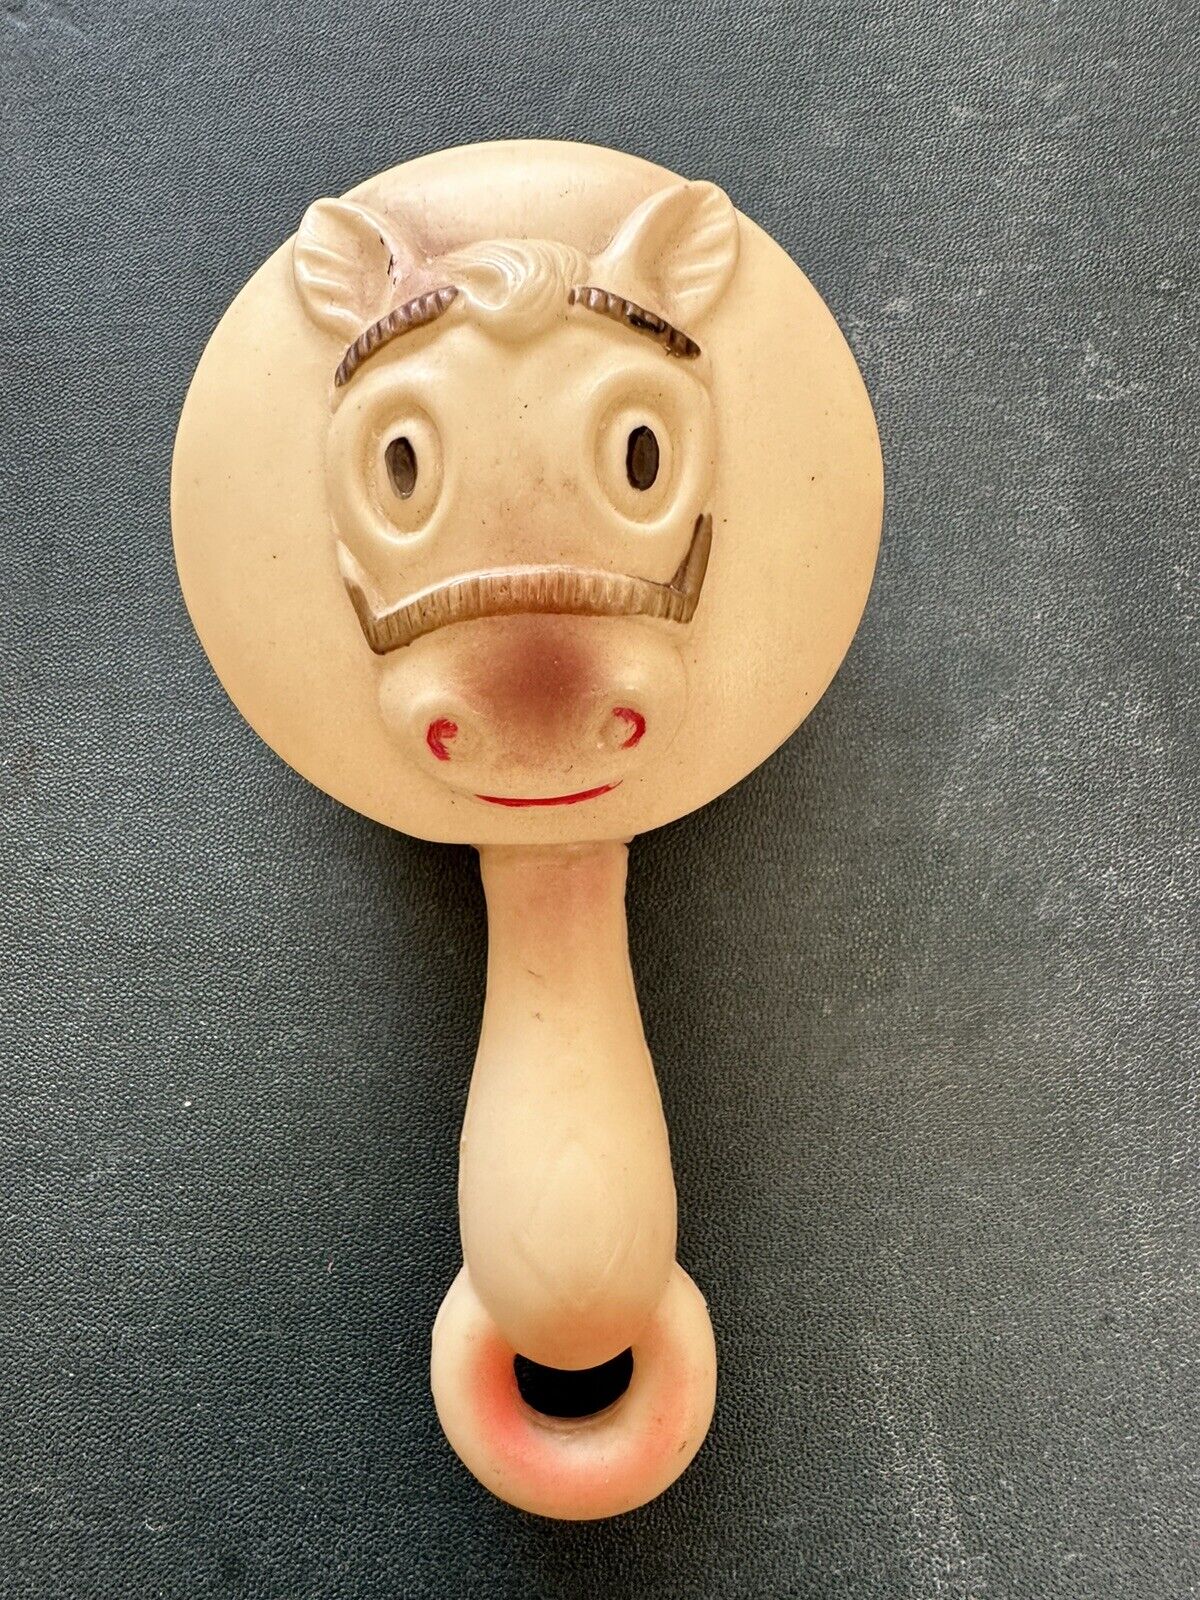 Vintage 1940s Niagara Falls souvenir horse baby celluloid rattle toy